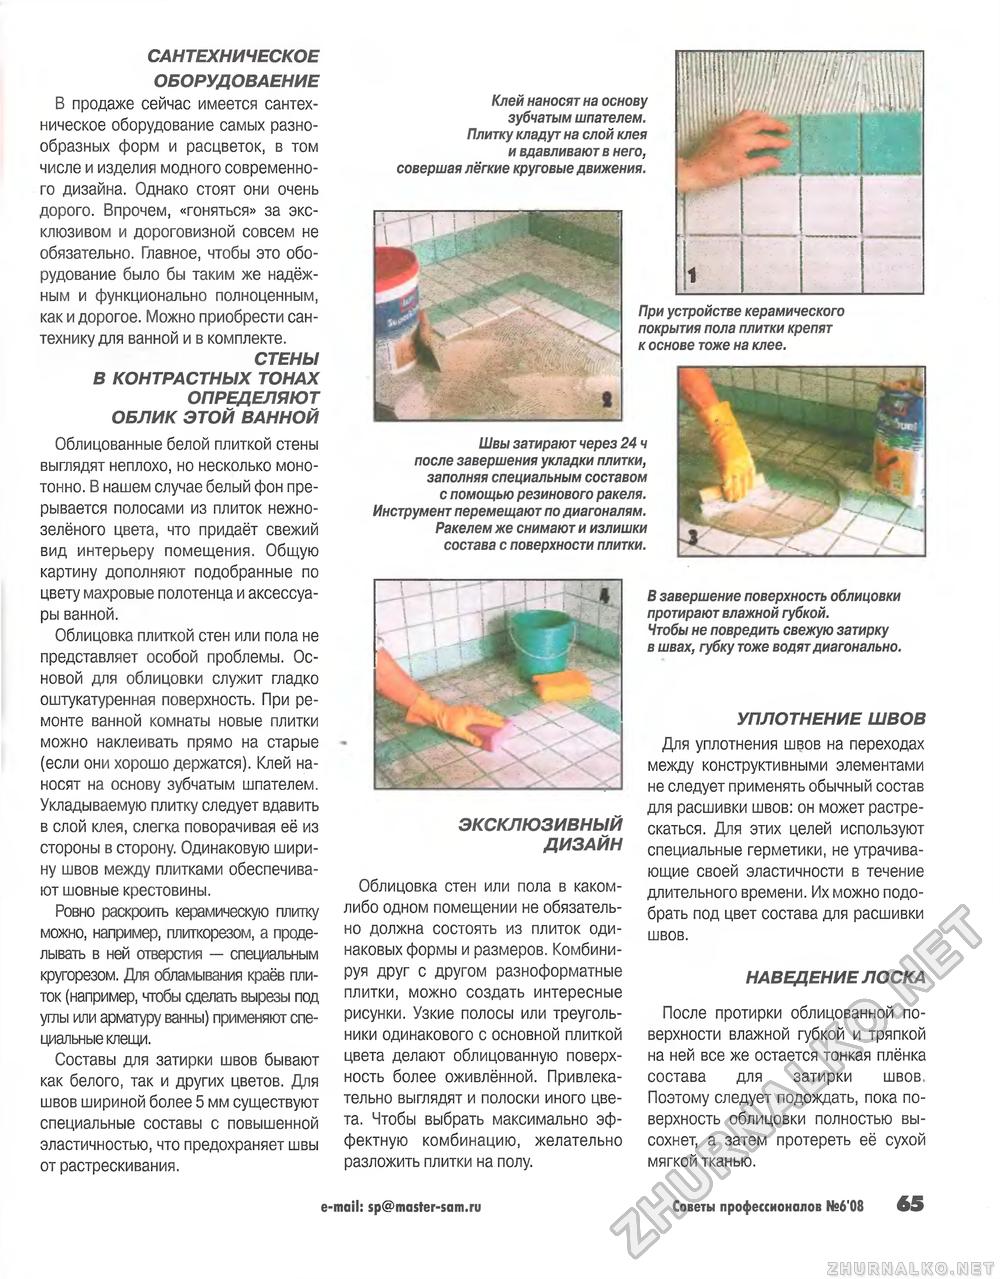 Советы профессионалов 2008-06, страница 65